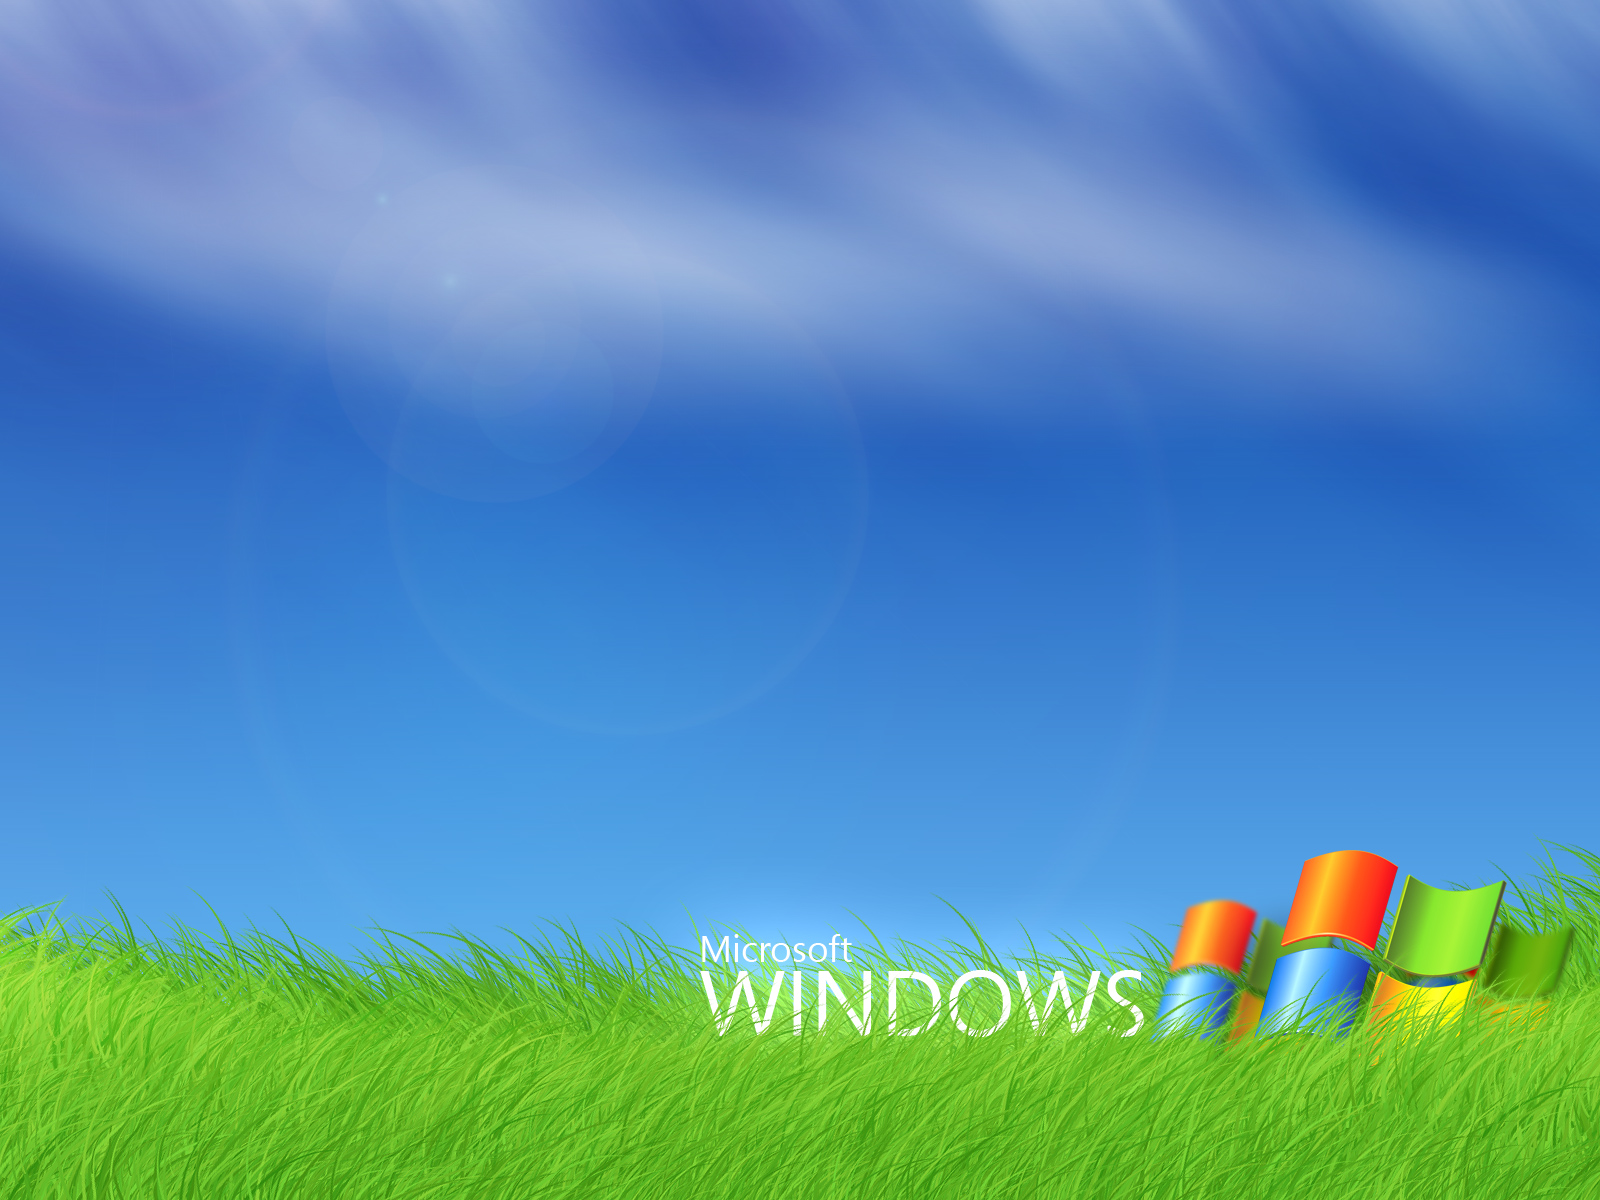 Microsoft Windows161913727 - Microsoft Windows - Windows, Microsoft, Flag